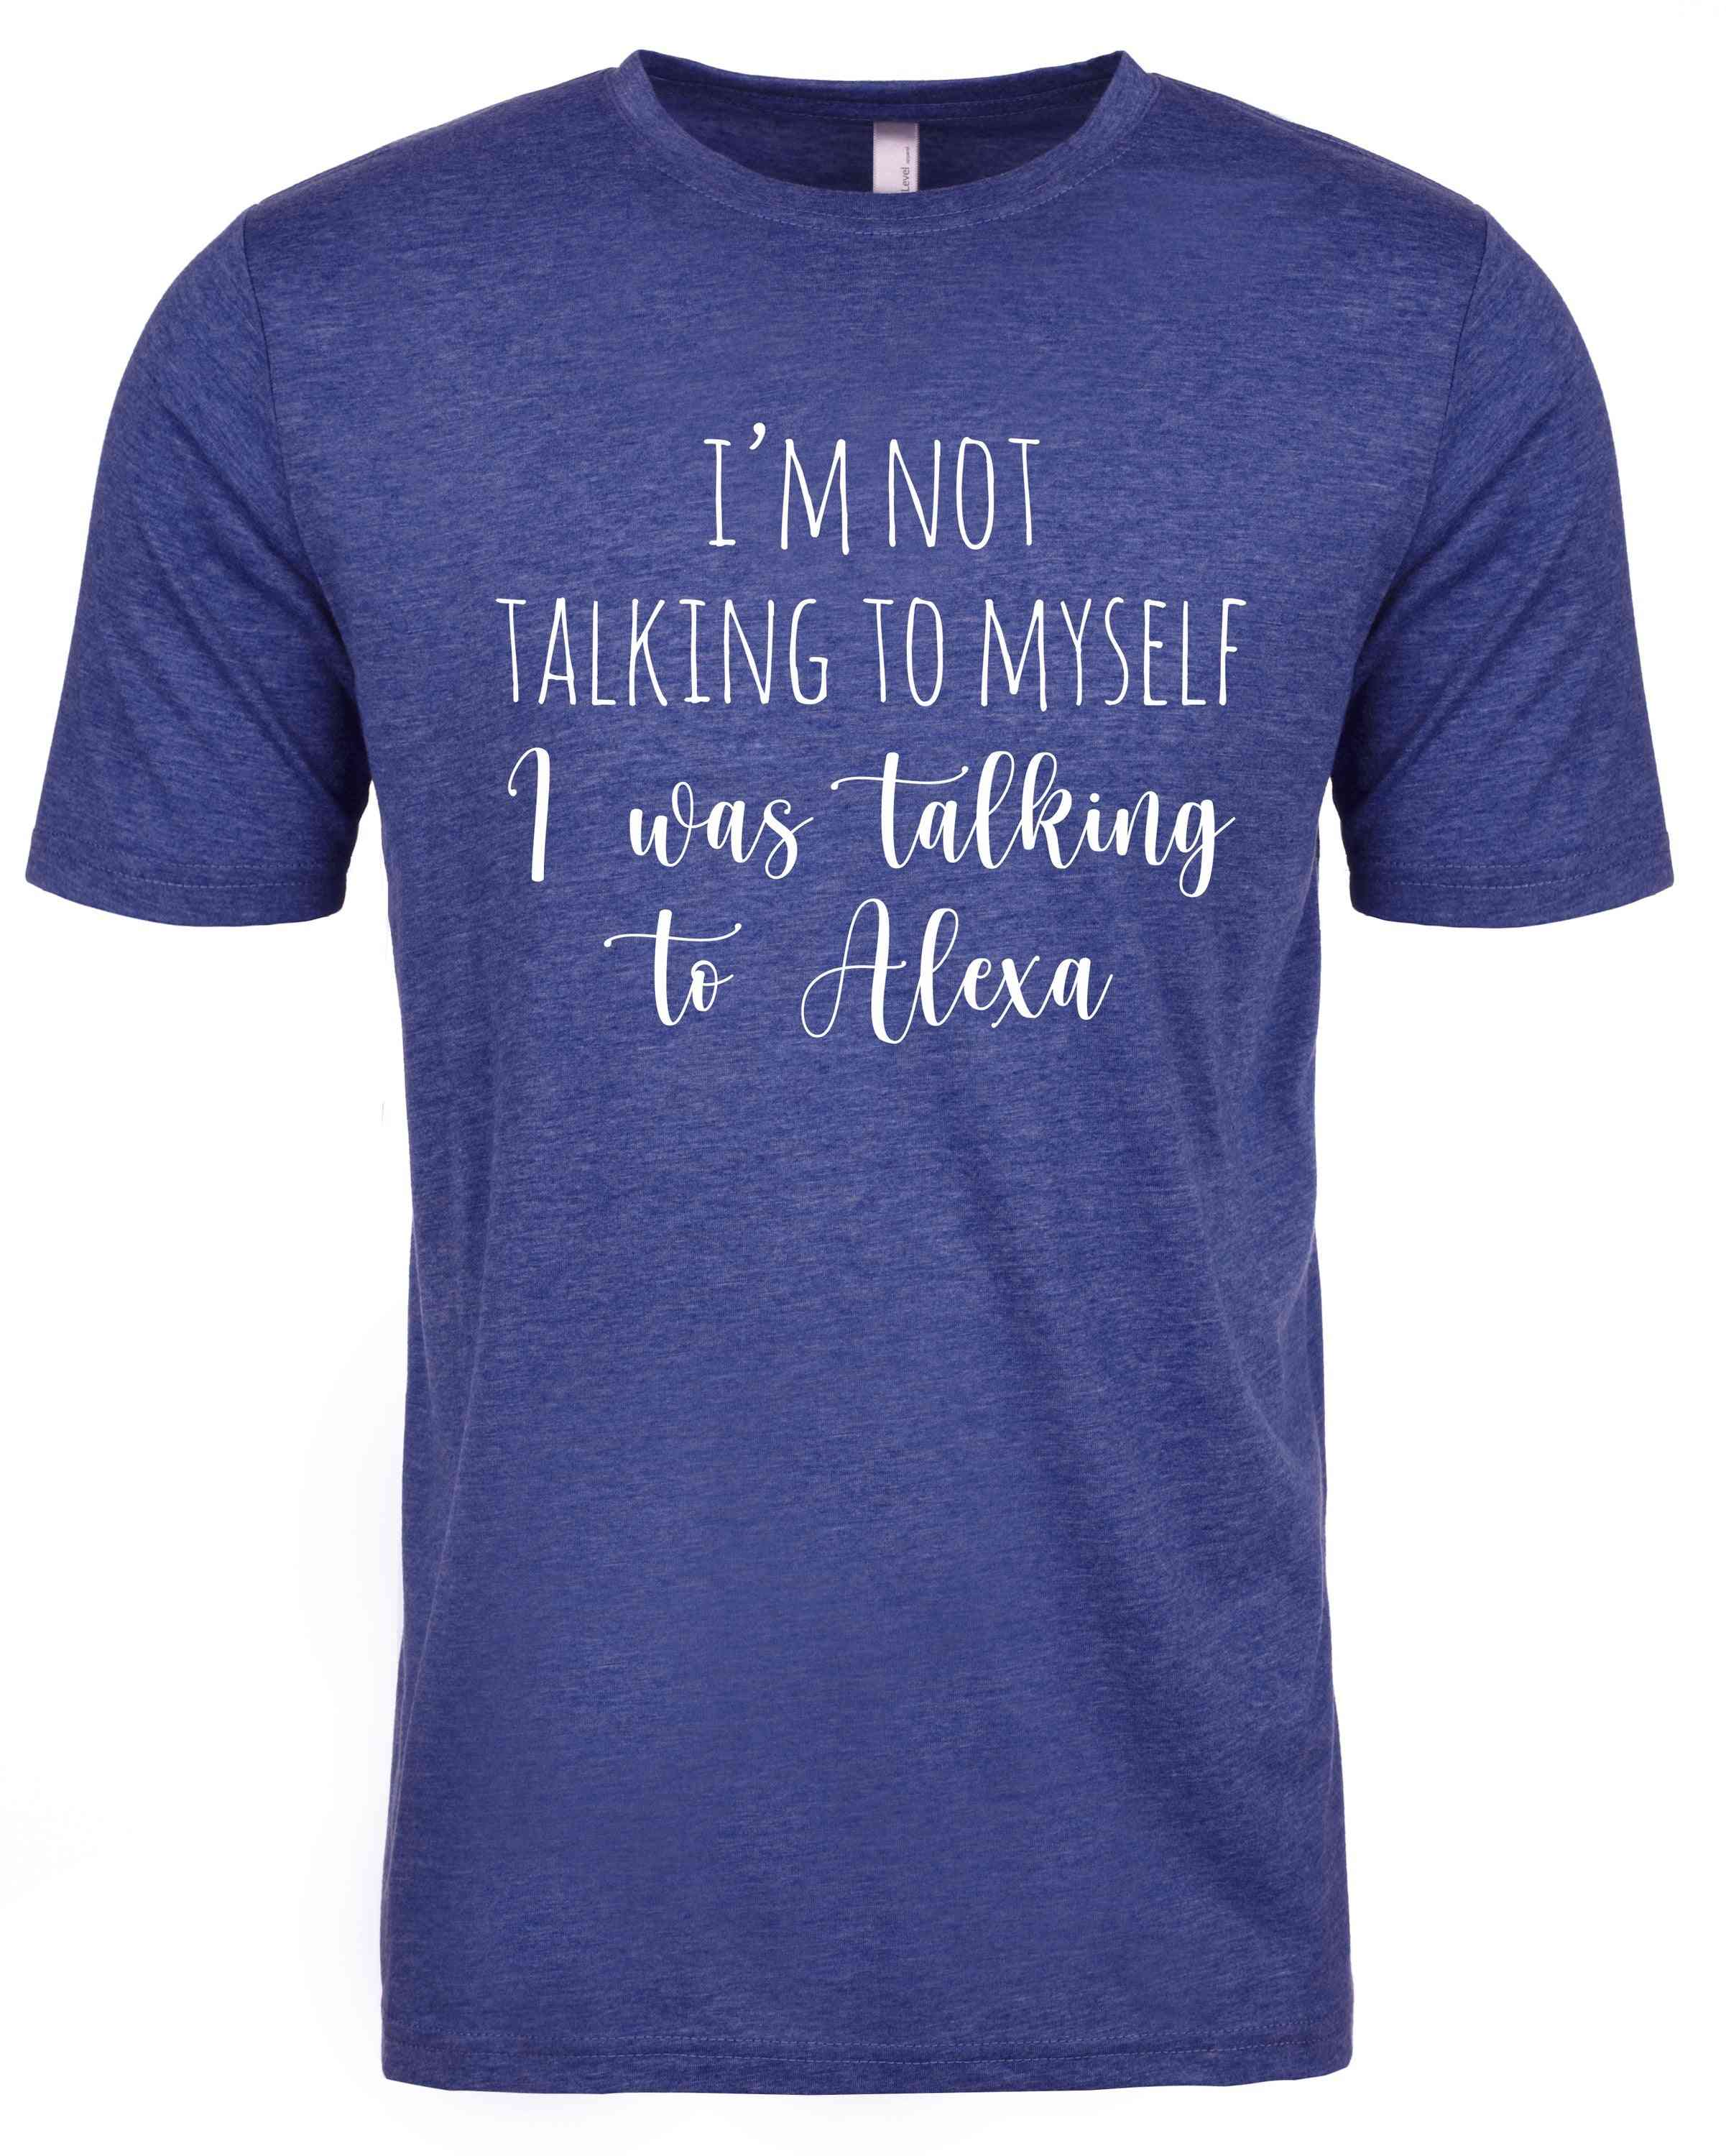 Eu não estou falando comigo mesmo, eu estava falando com alexa camisetas para homens, crianças, mulheres